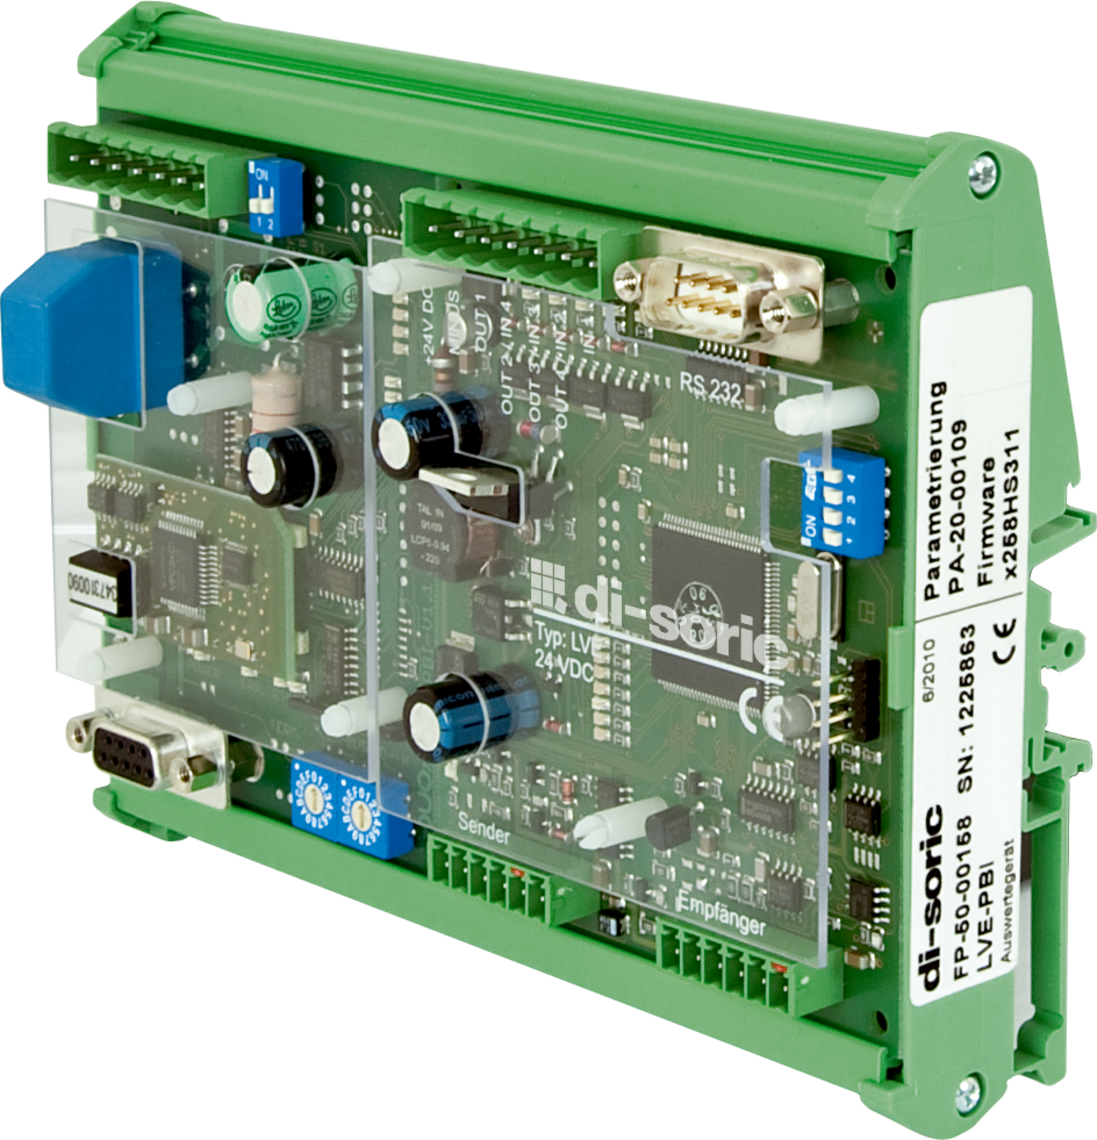 LI-A 用于 LI 系列的电子评估设备